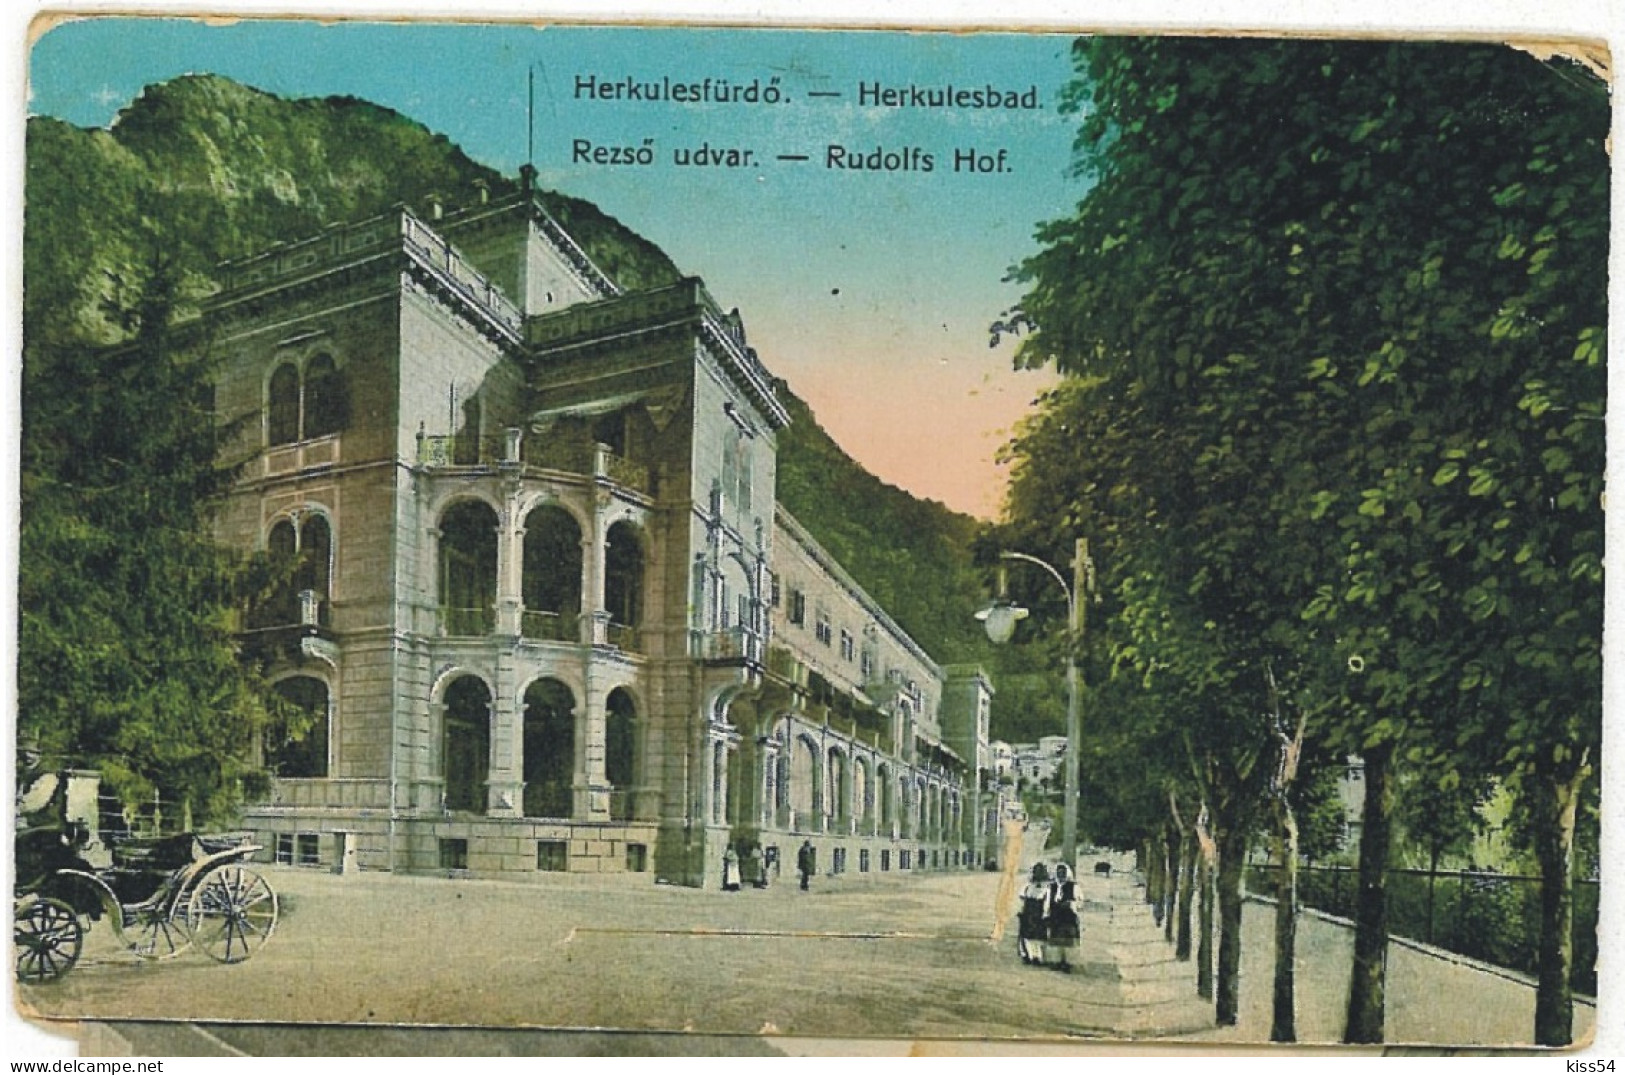 RO 52 - 6084 Baile HERCULANE, Caras-Severin, Romania - Old Postcard +10 Mini Photocards - Used - 1910 - Rumania